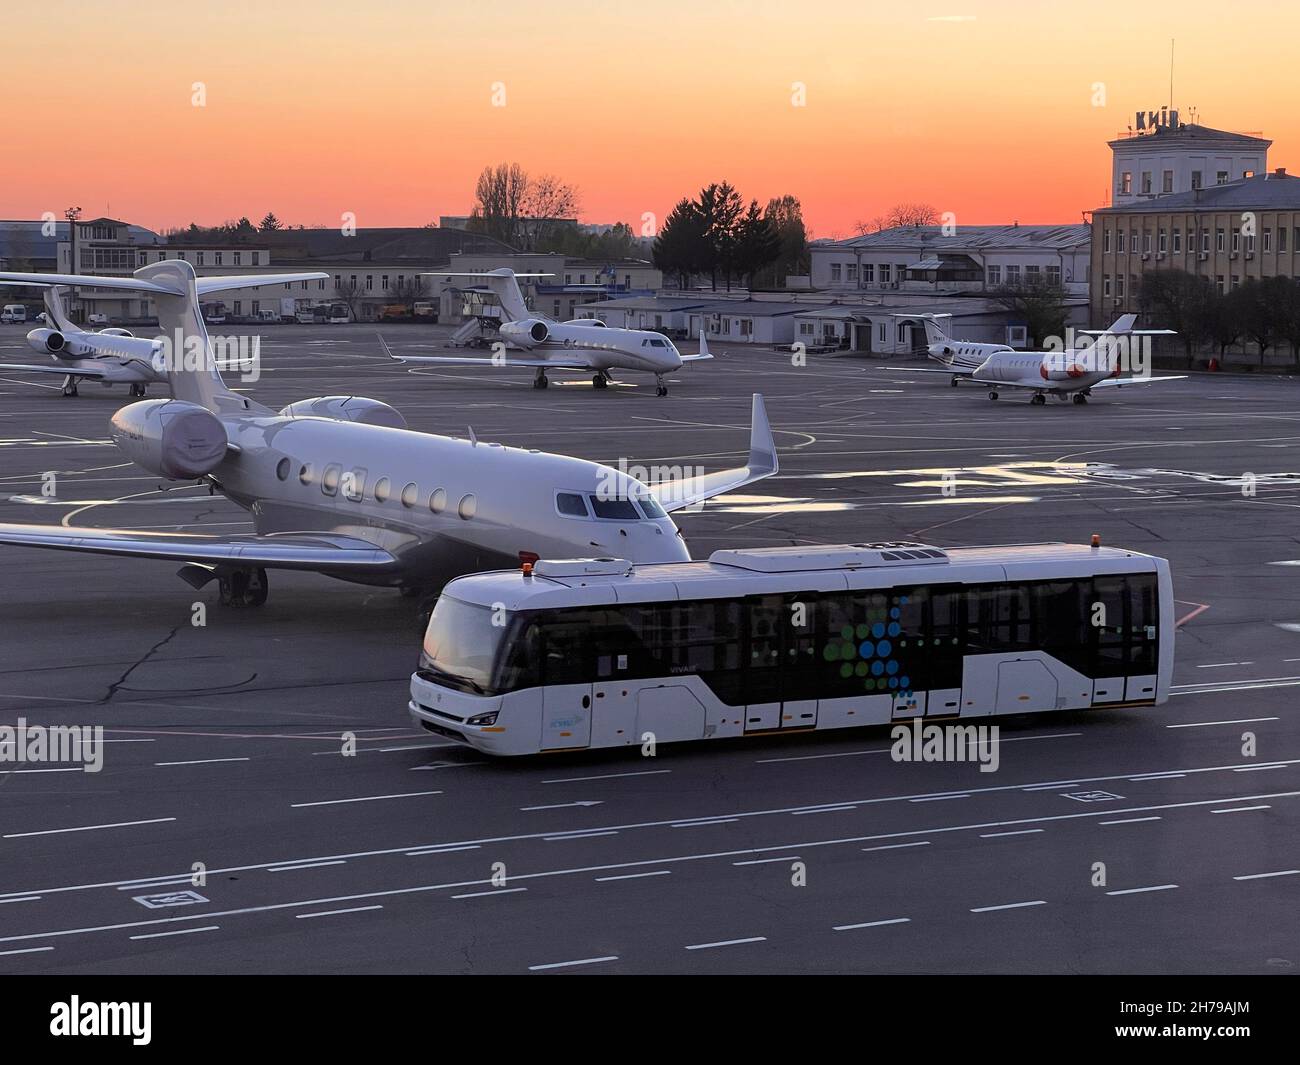 Igor Sikorsky Kyiv International Airport Zhuliany è uno dei due aeroporti passeggeri della capitale Ucraina Kiev, l'altro è Boryspil Interna Foto Stock